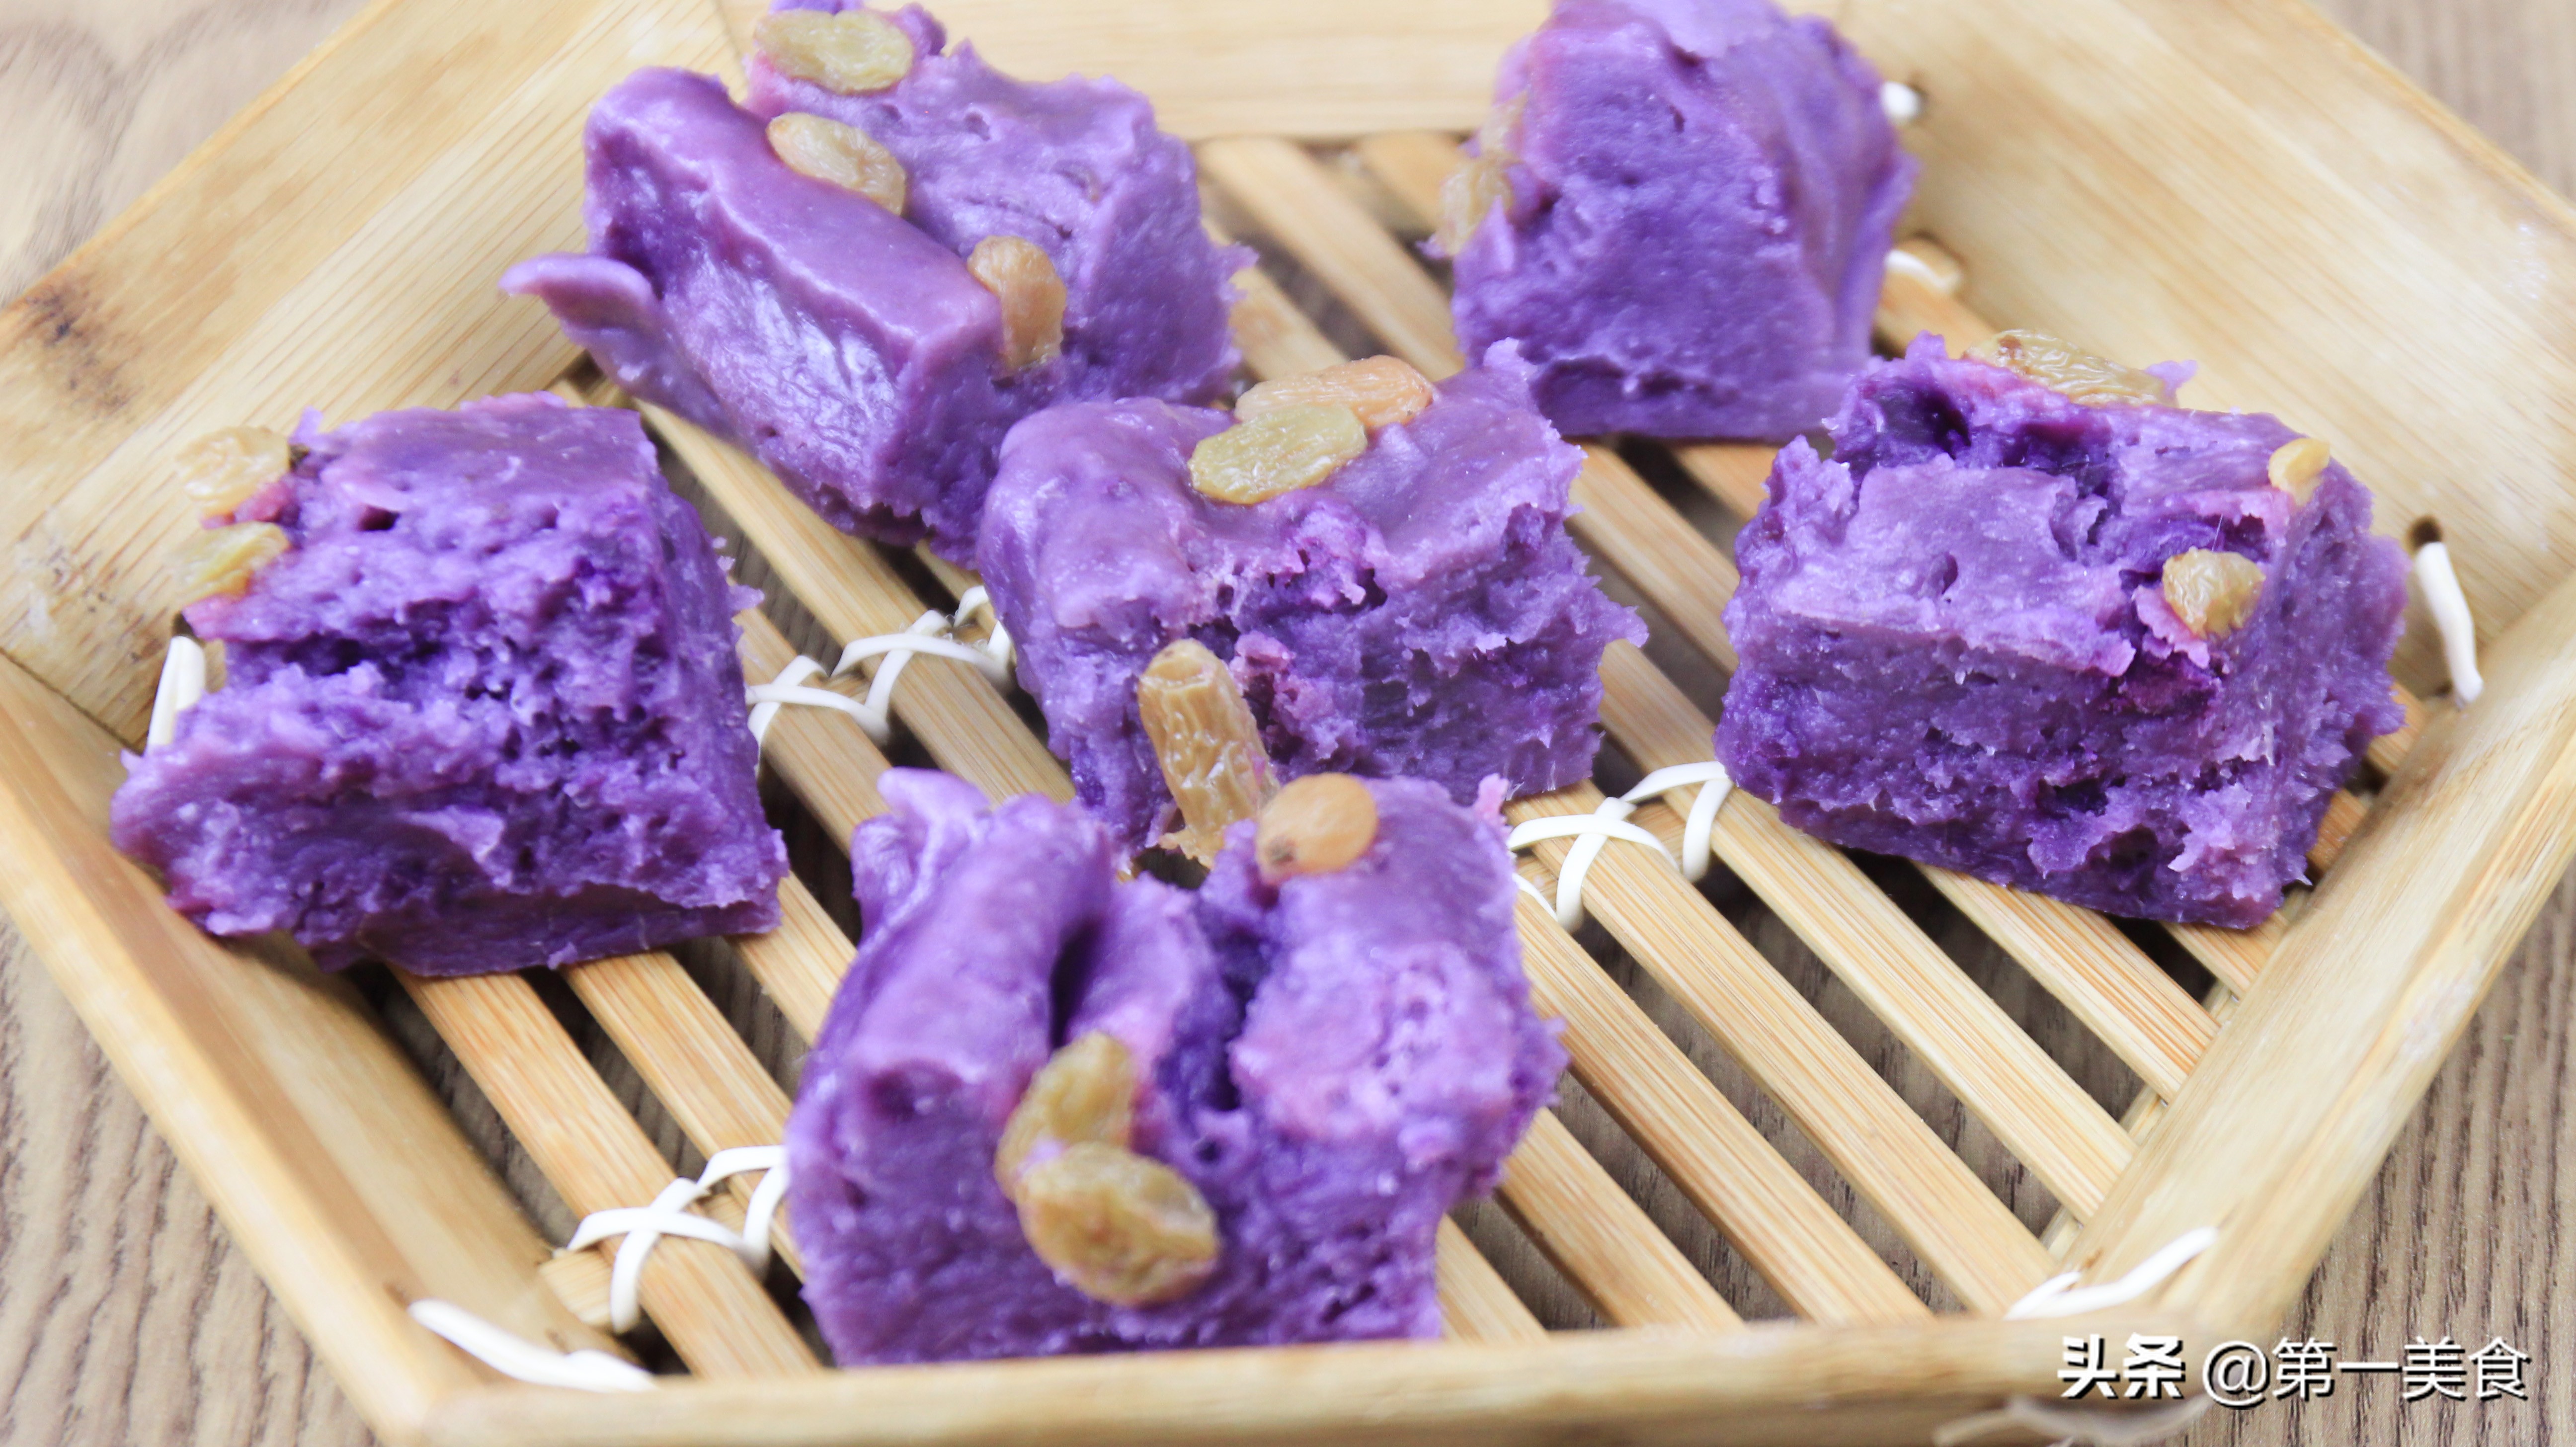 紫薯糕做法 无塌陷又软糯细腻